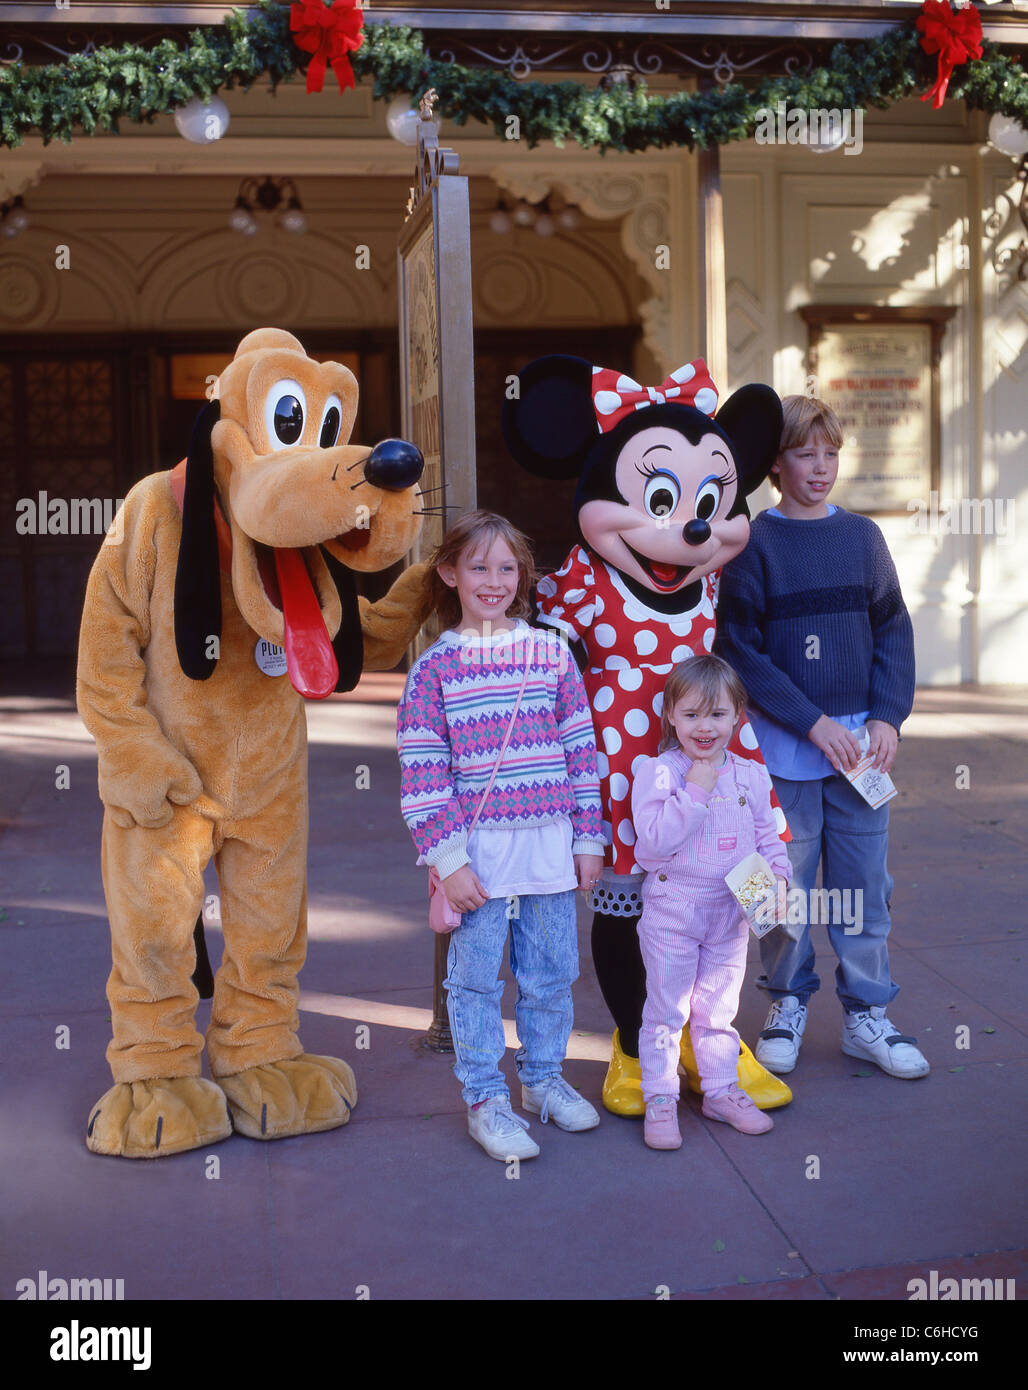 Los niños con Plutón y Minnie personajes, Fantasyland Disneyland, Anaheim, California, Estados Unidos de América Foto de stock